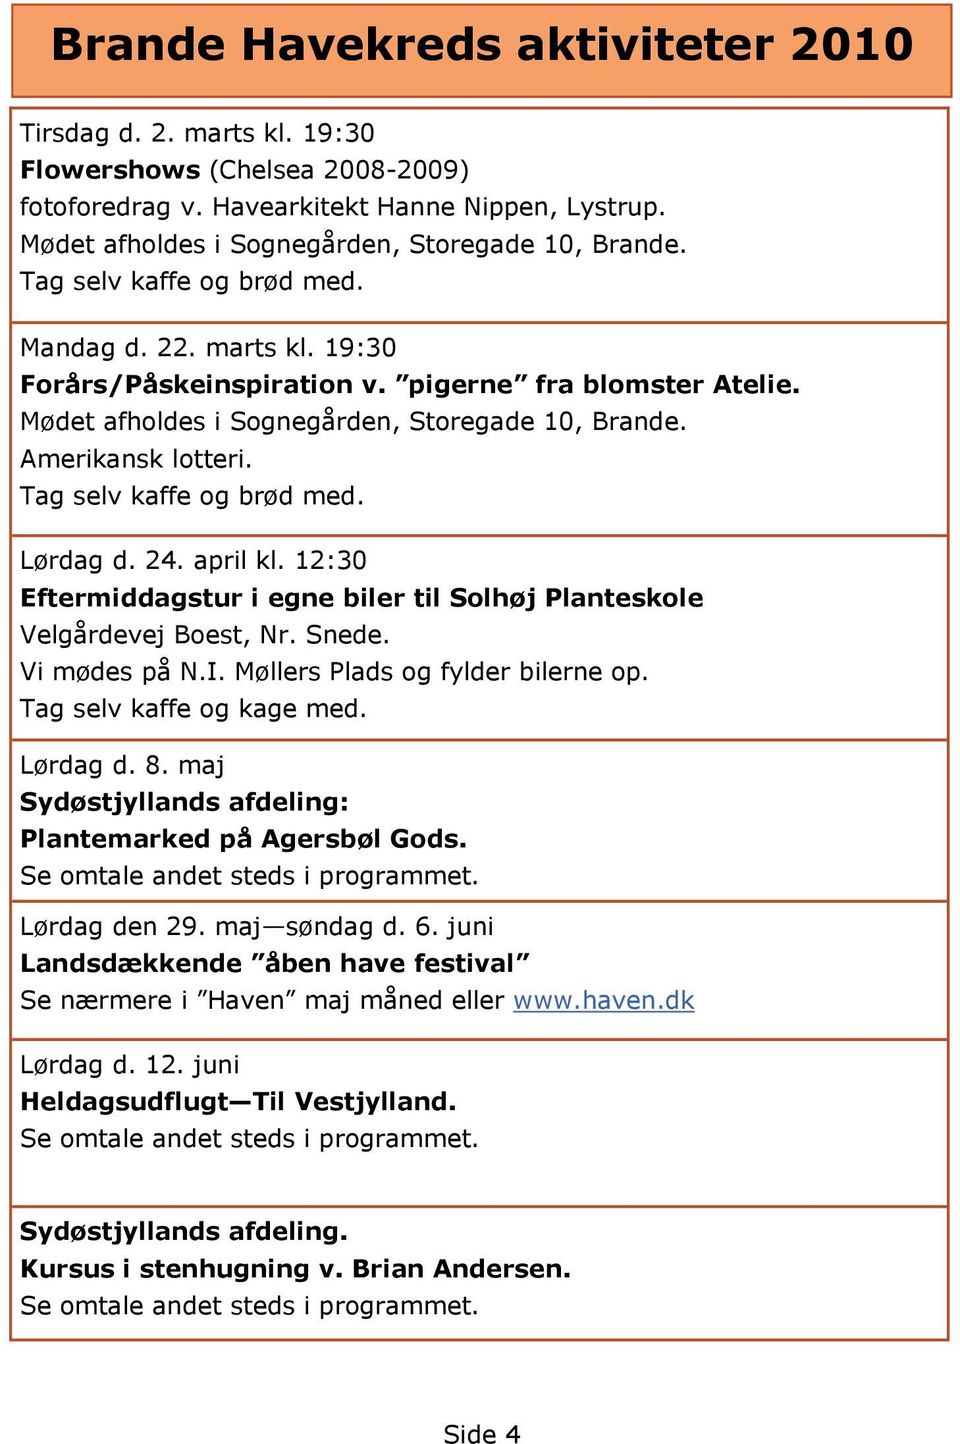 Tag selv kaffe og brød med. Lørdag d. 24. april kl. 12:30 Eftermiddagstur i egne biler til Solhøj Planteskole Velgårdevej Boest, Nr. Snede. Vi mødes på N.I. Møllers Plads og fylder bilerne op.